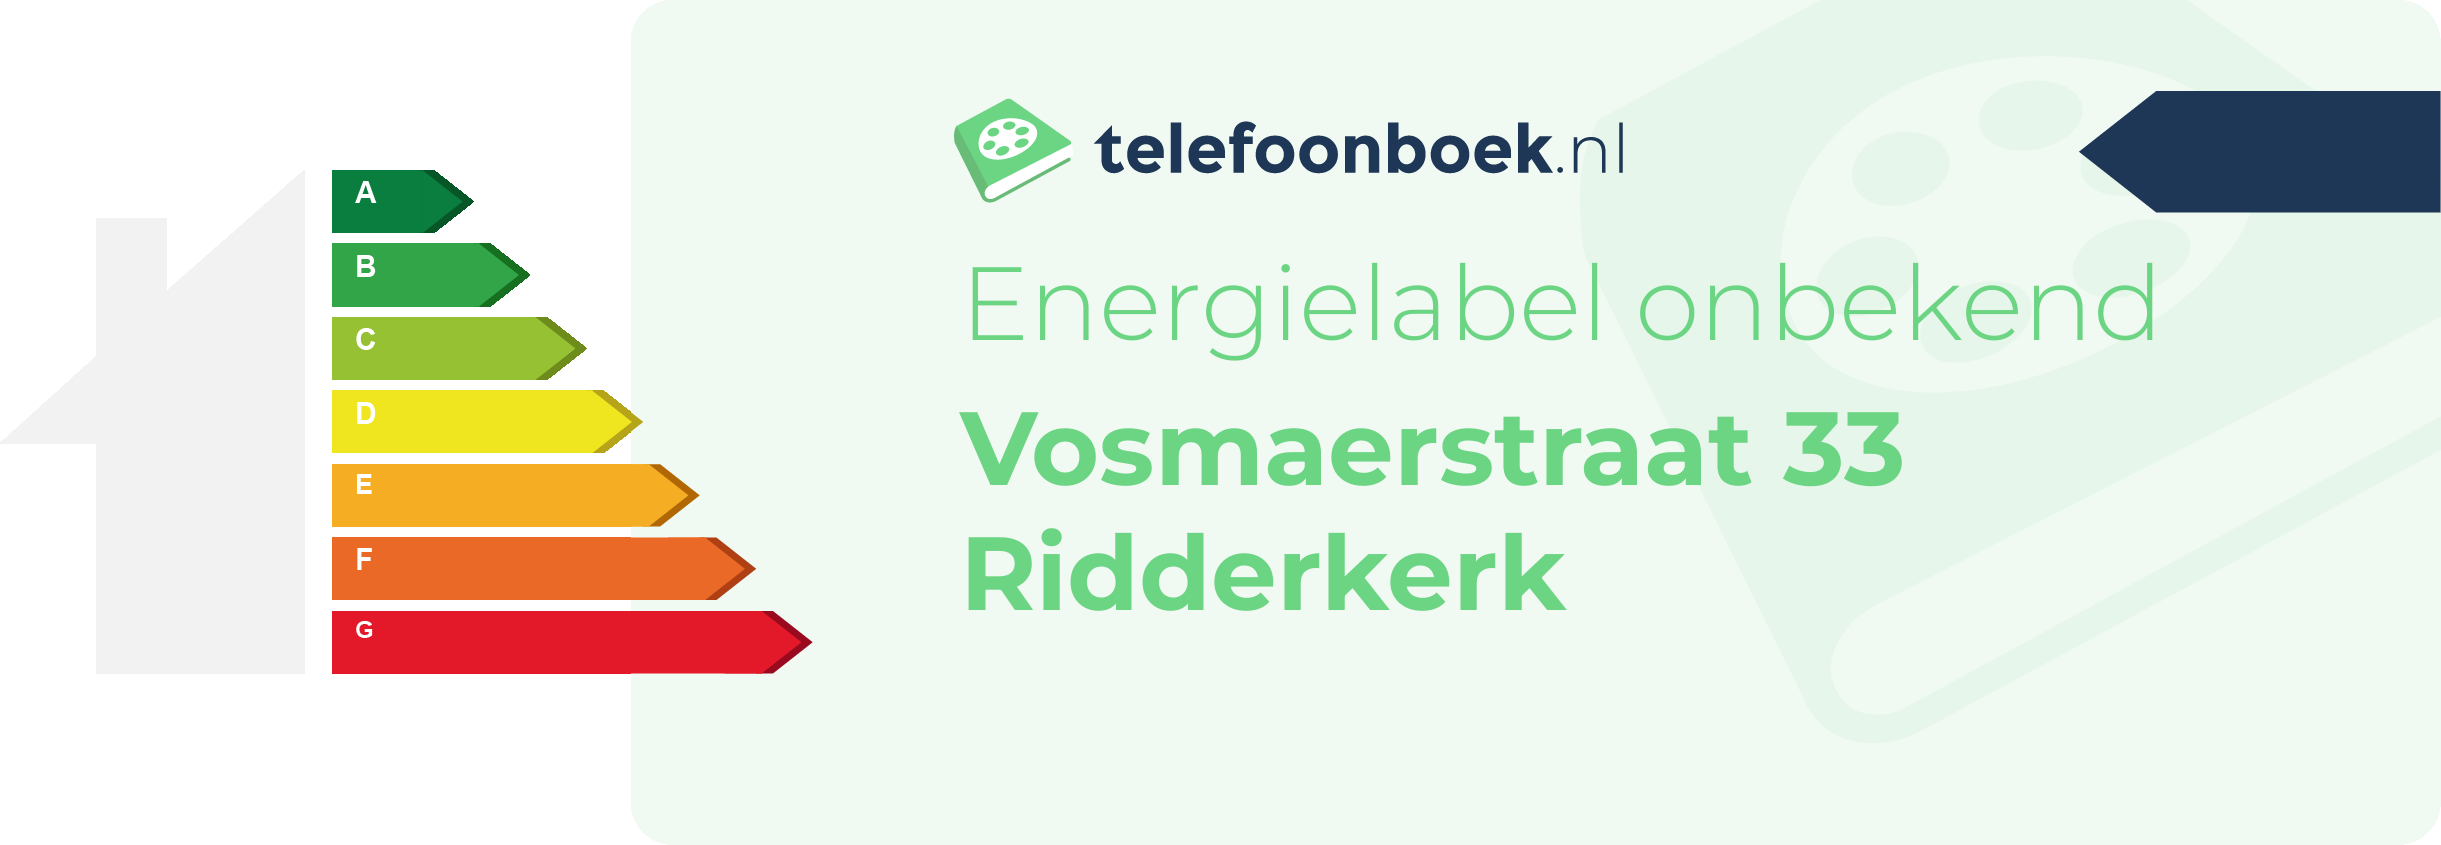 Energielabel Vosmaerstraat 33 Ridderkerk